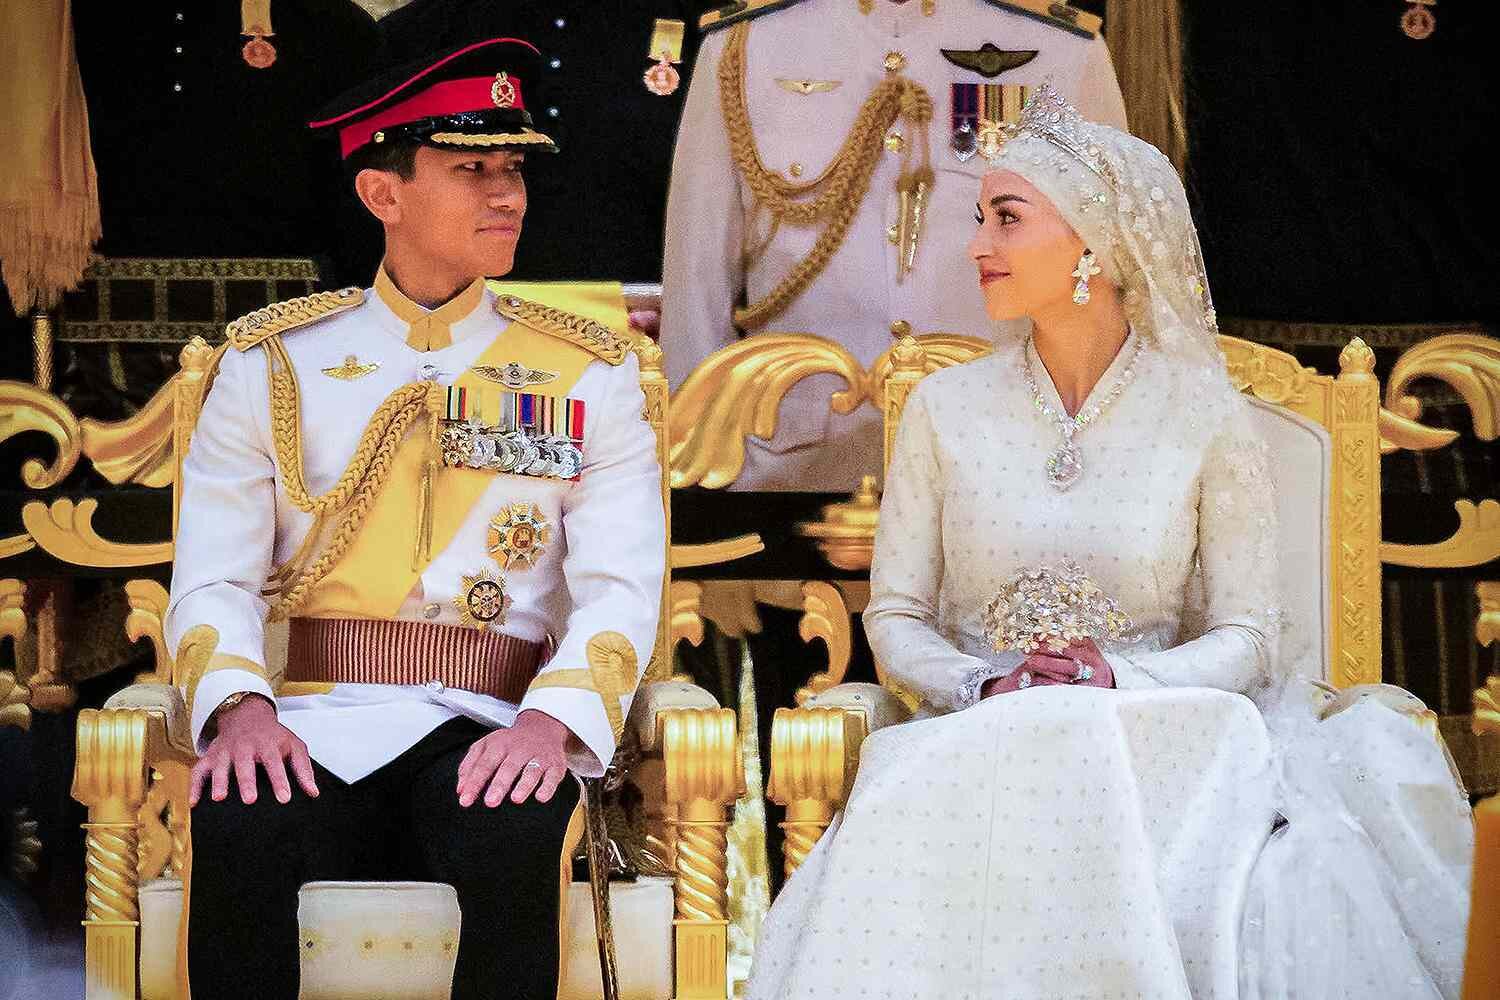 Đám cưới Hoàng tử Brunei: Cặp đôi đẹp như bước ra từ cổ tích - Ảnh 4.